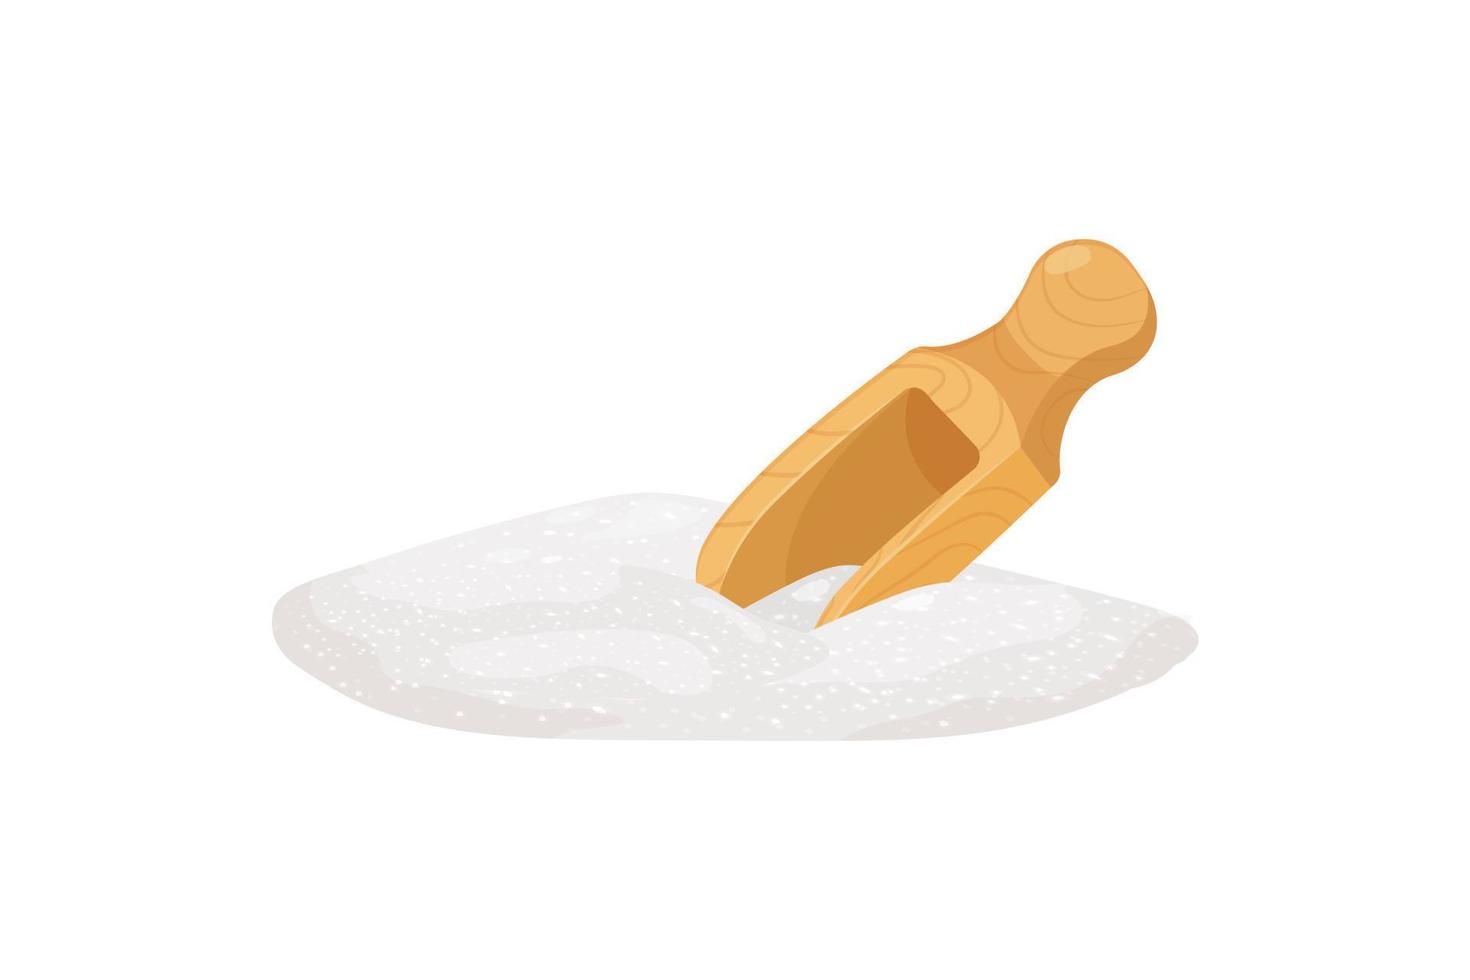 tas de sucre avec cuillère en bois. verser la farine à la spatule. illustration de vecteur de sel de mer isolé sur fond blanc